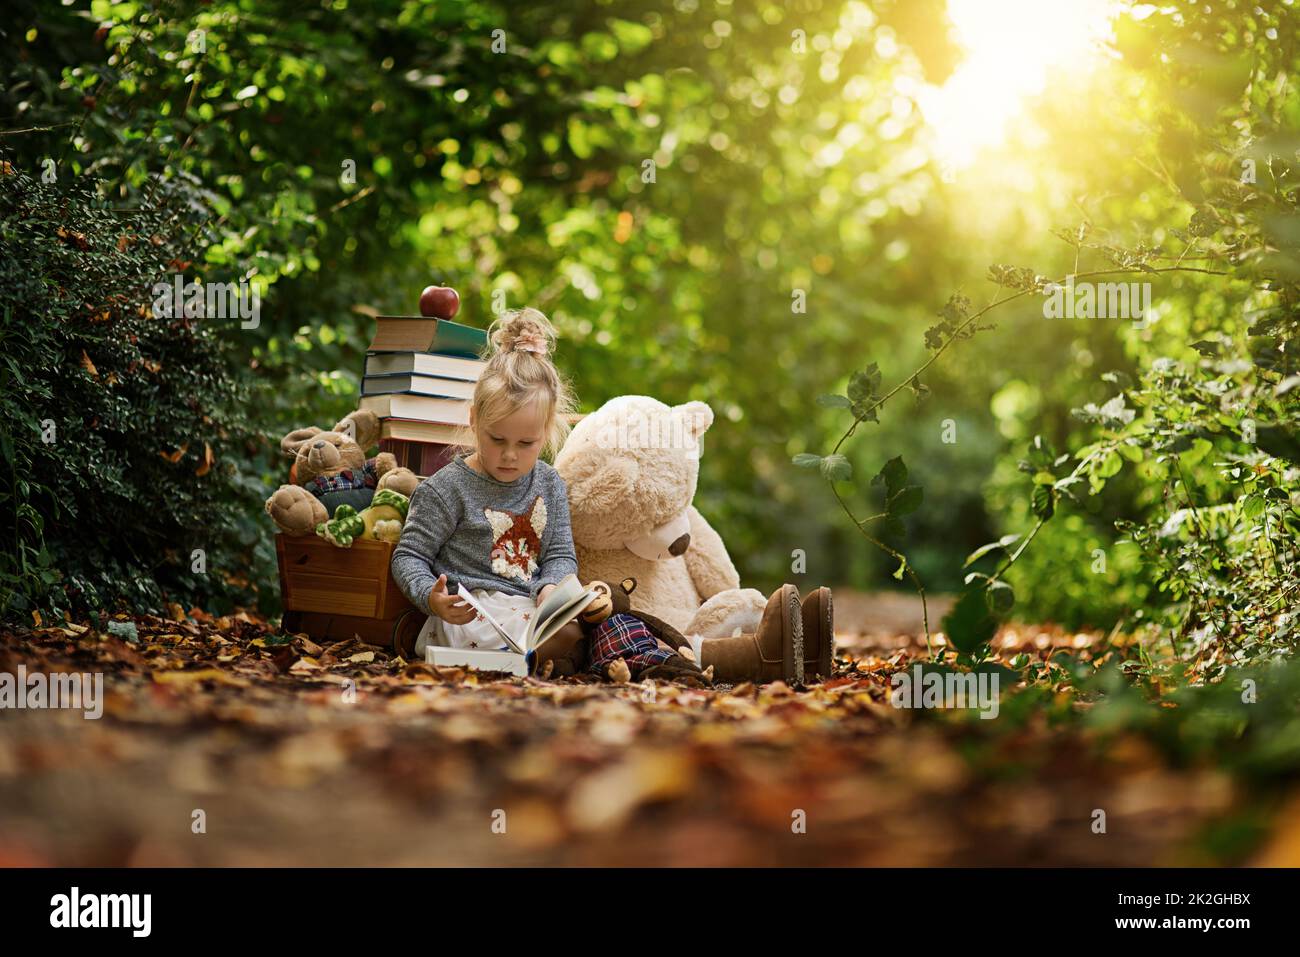 Fördern Sie ihre Neugier. Aufnahme eines kleinen Mädchens, das draußen im Wald vor ihren Spielsachen liest. Stockfoto